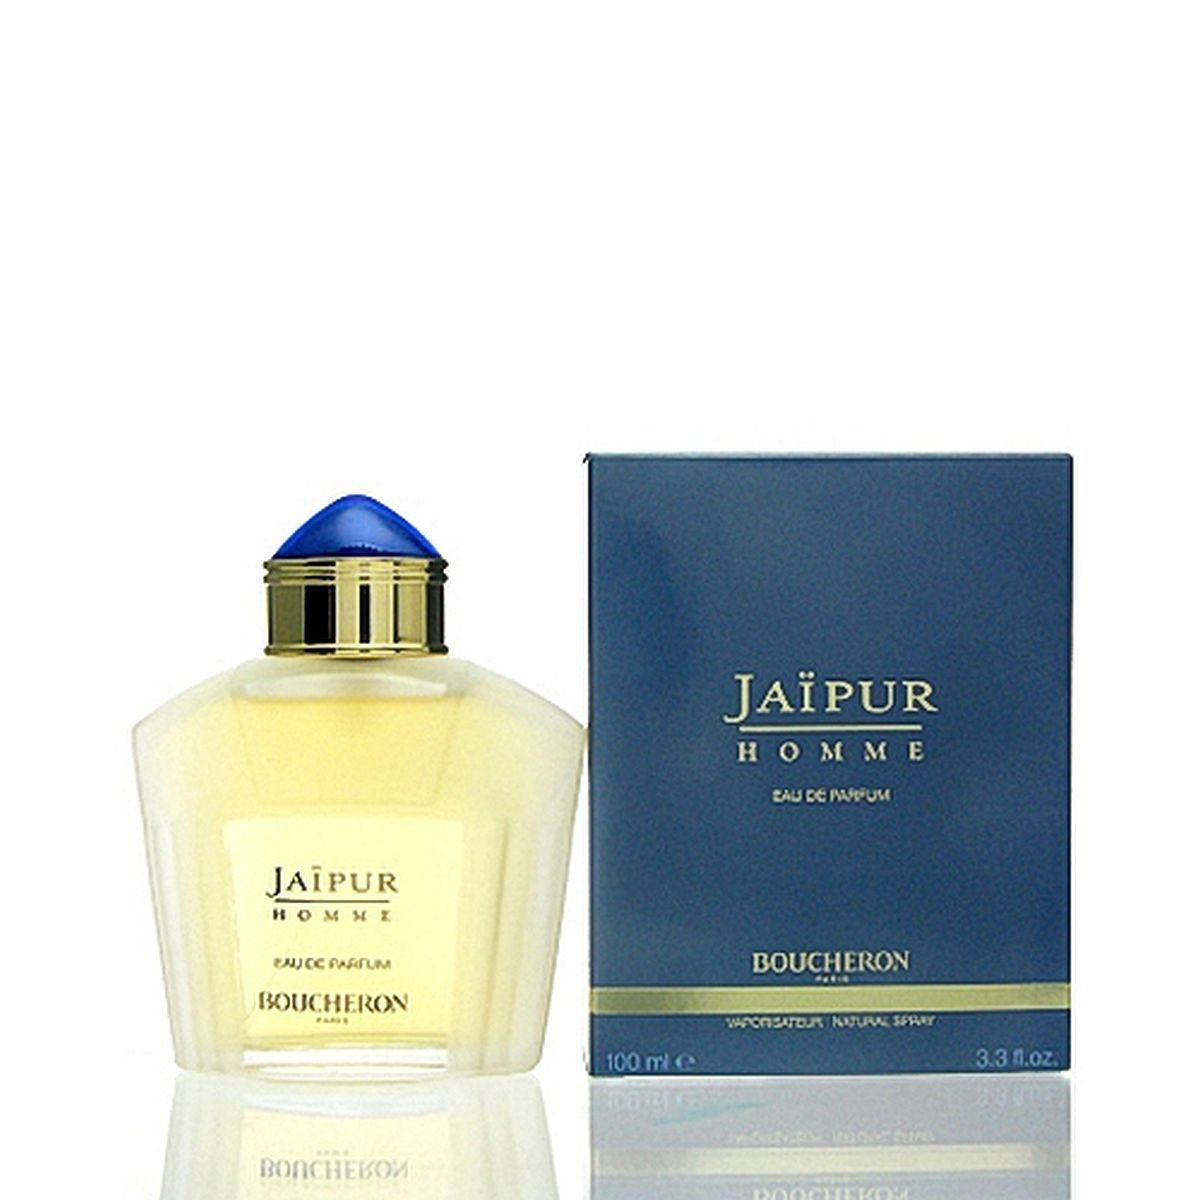 BOUCHERON Eau de Parfum Boucheron de 100 ml Parfum Eau Homme Jaipur